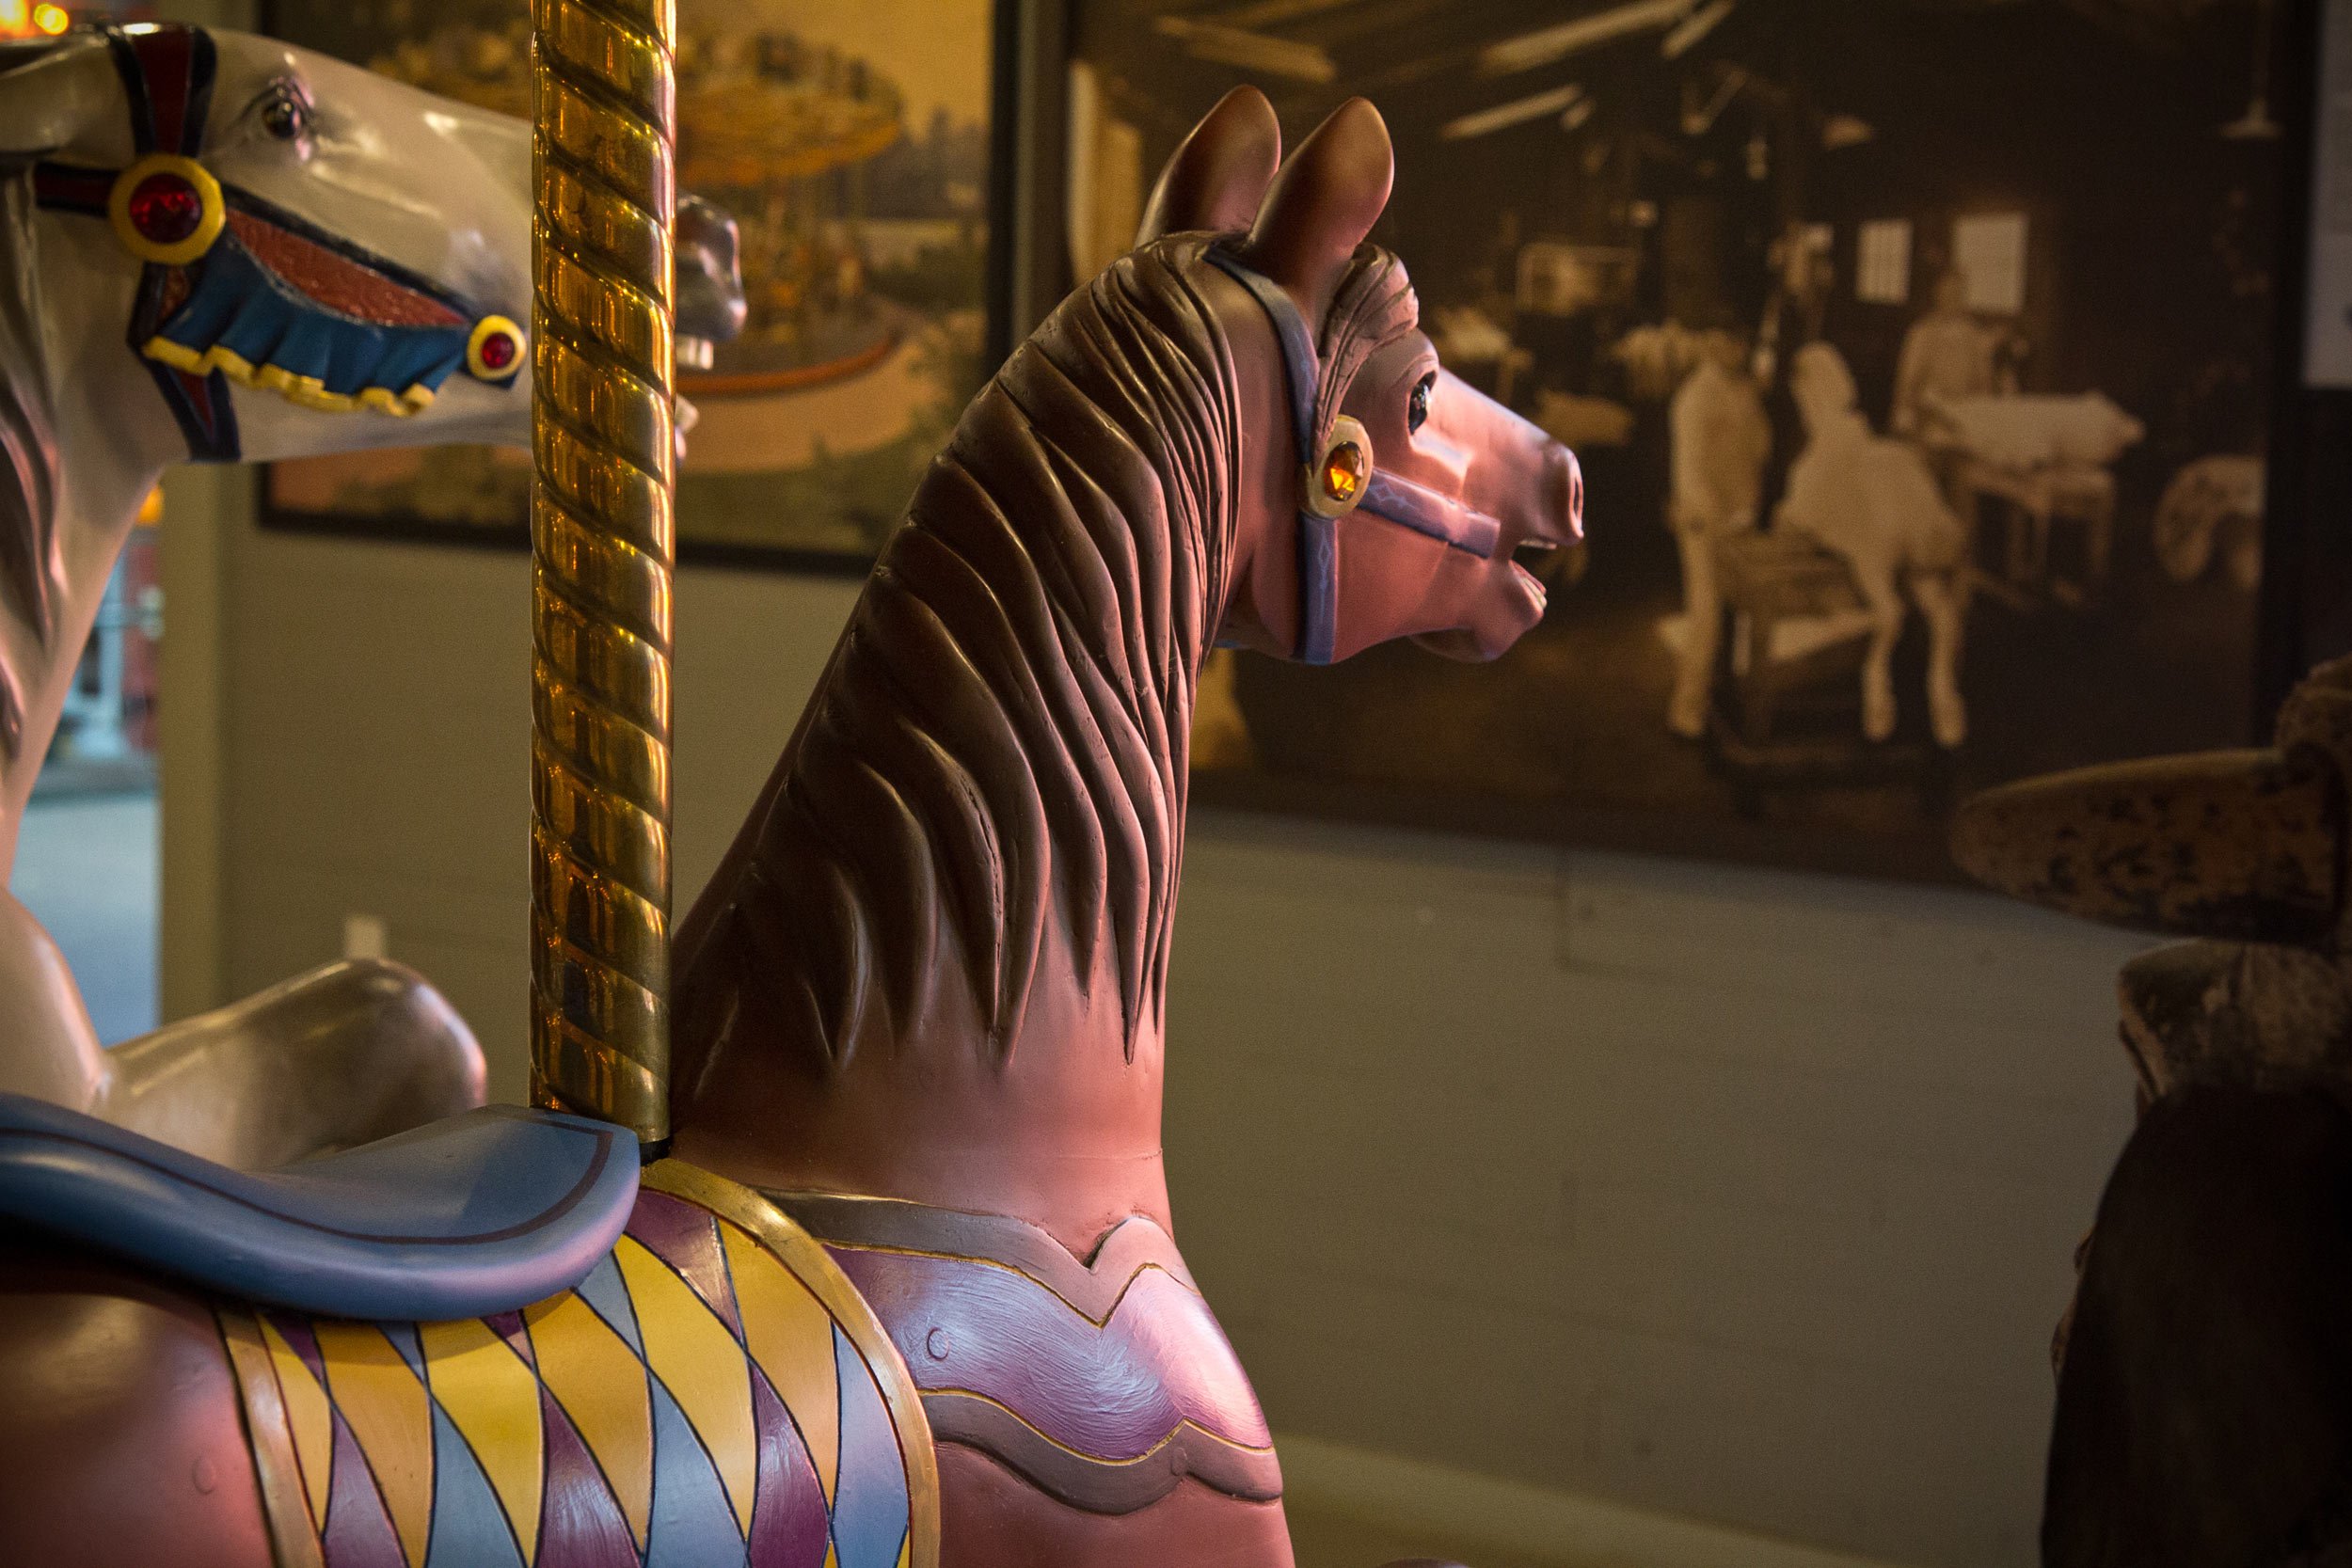 carousel-horse-at-museum-in-north-tonawanda